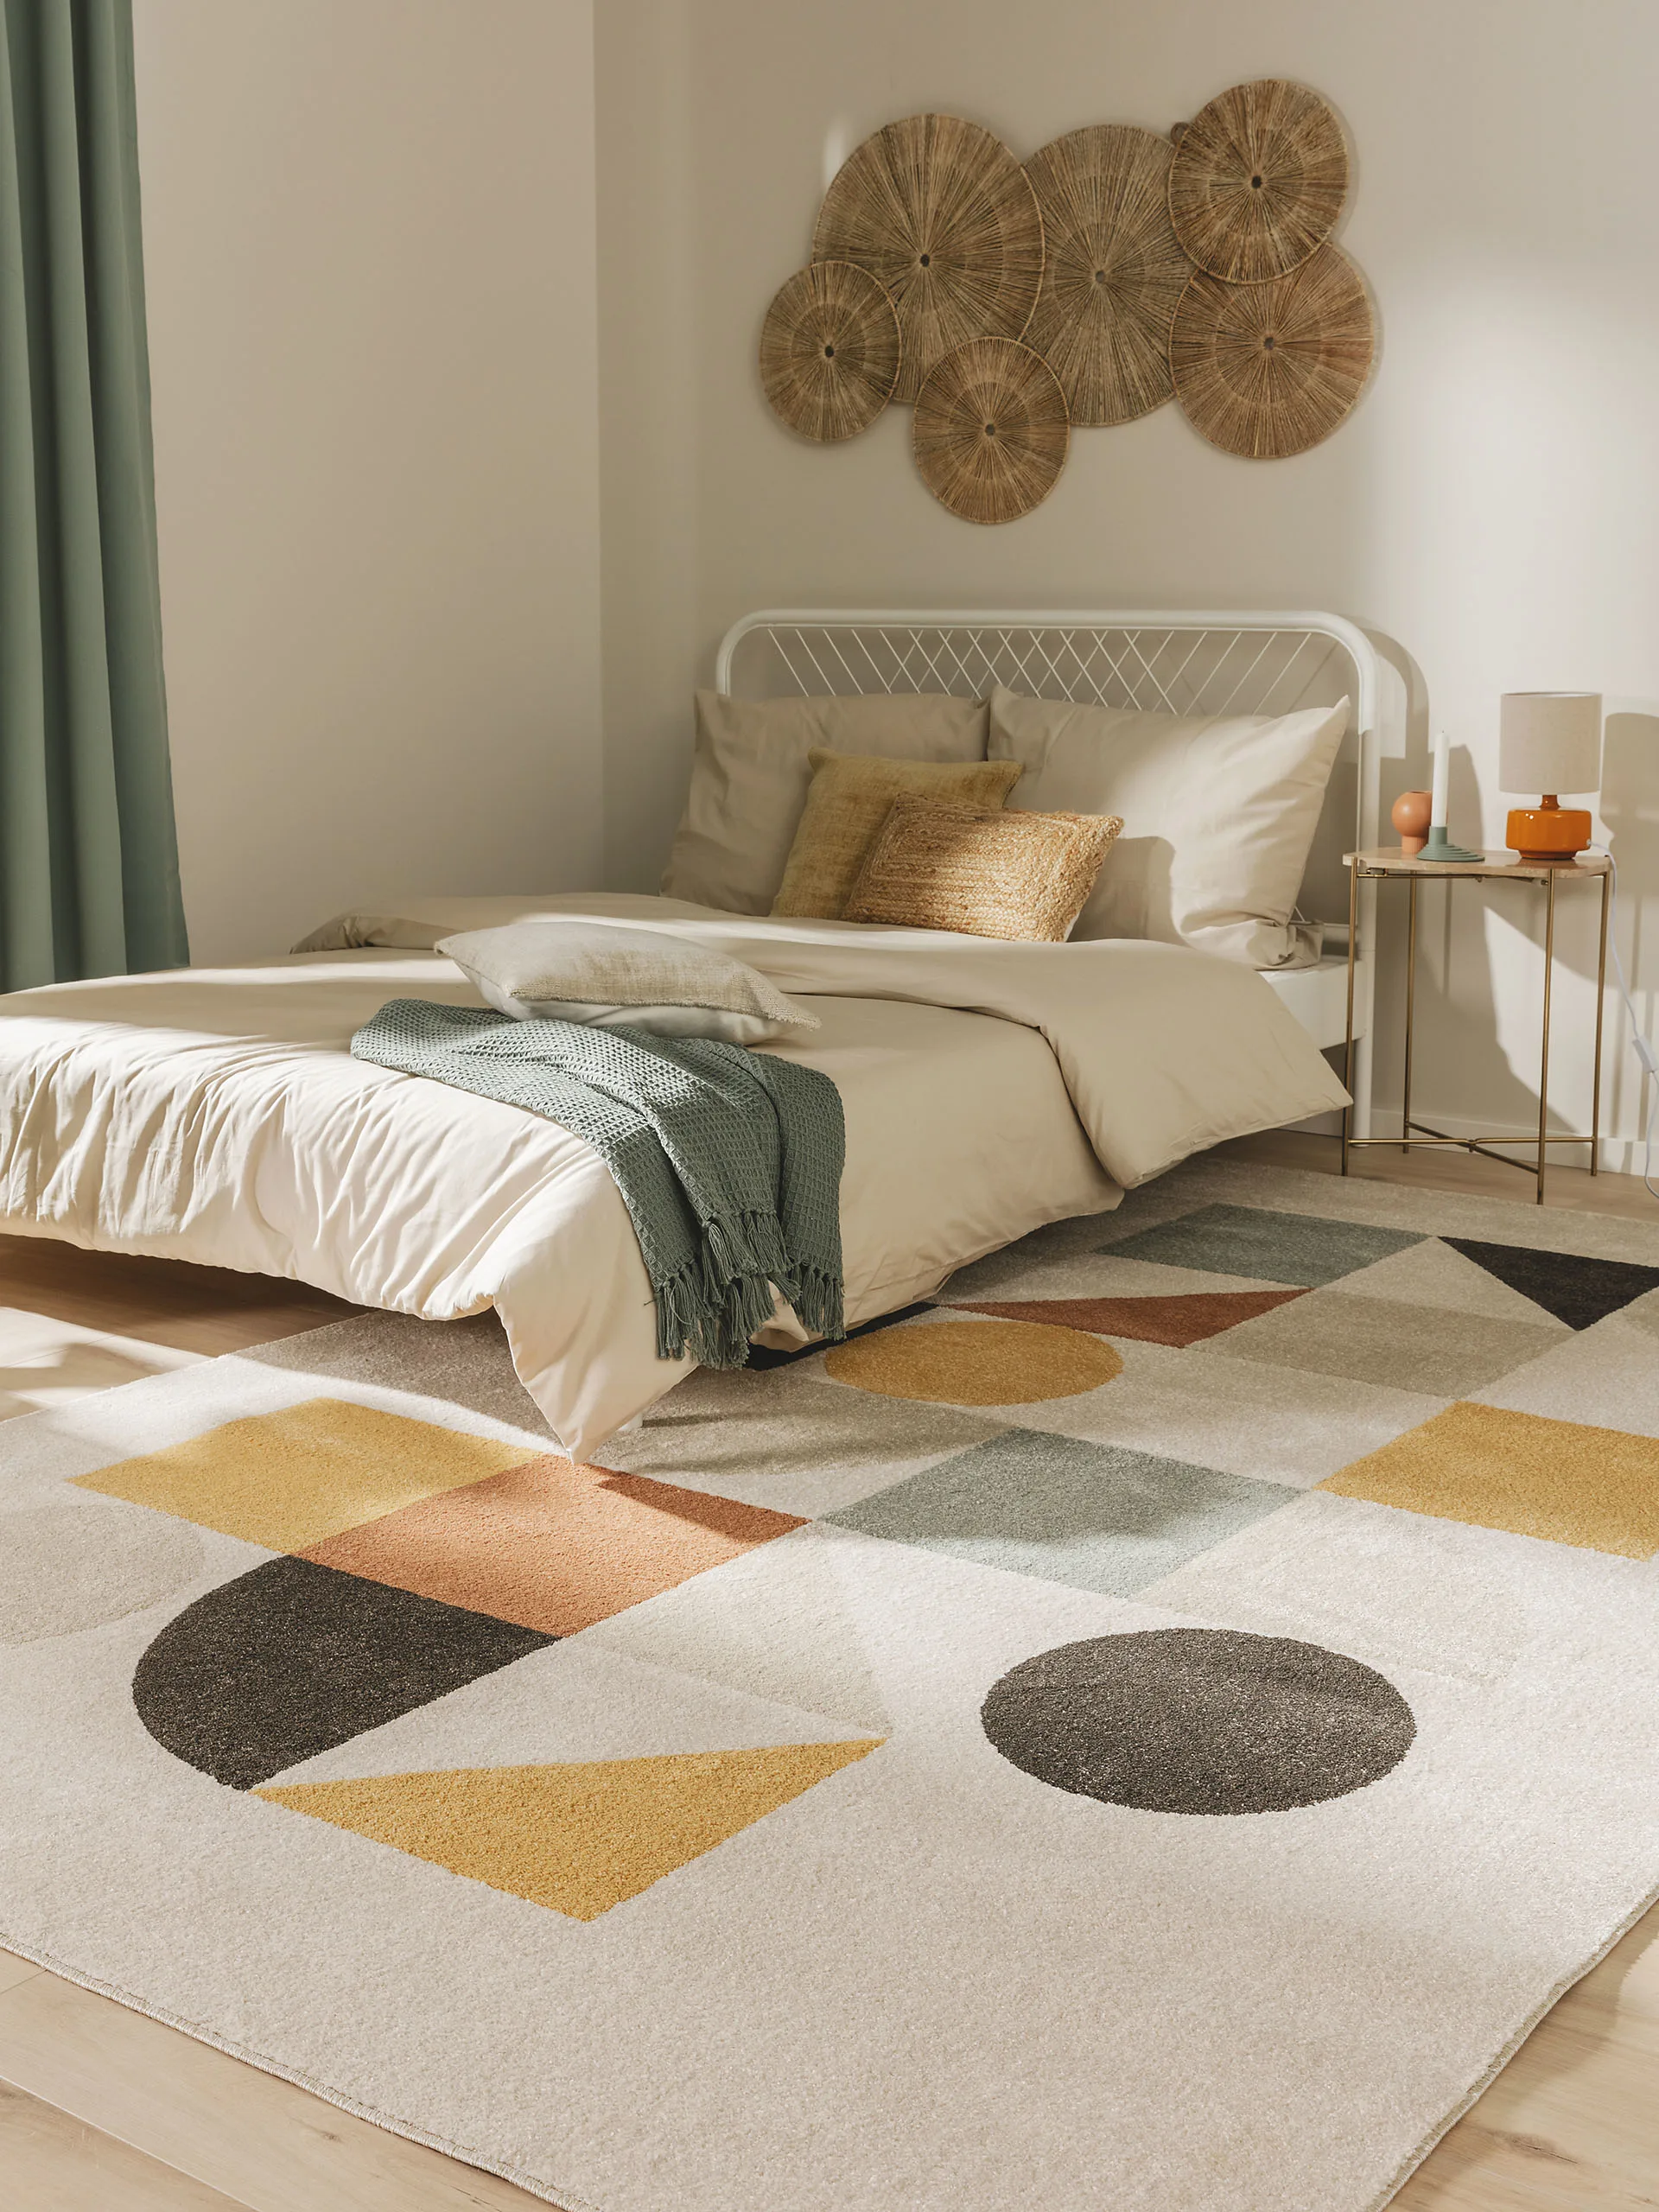 Natürlich eingerichtetes Schlafzimmer mit Farbakzenten: Ein Teppich in Mintgrün, Gelb, Orange und Grau liegt vor dem Bett, Dekokissen aus Jute sind auf dem Bett, ein langer, mintgrüner Vorhang ist am Fenster und ein Bild aus natürlichen Materialien hängt an der Wand